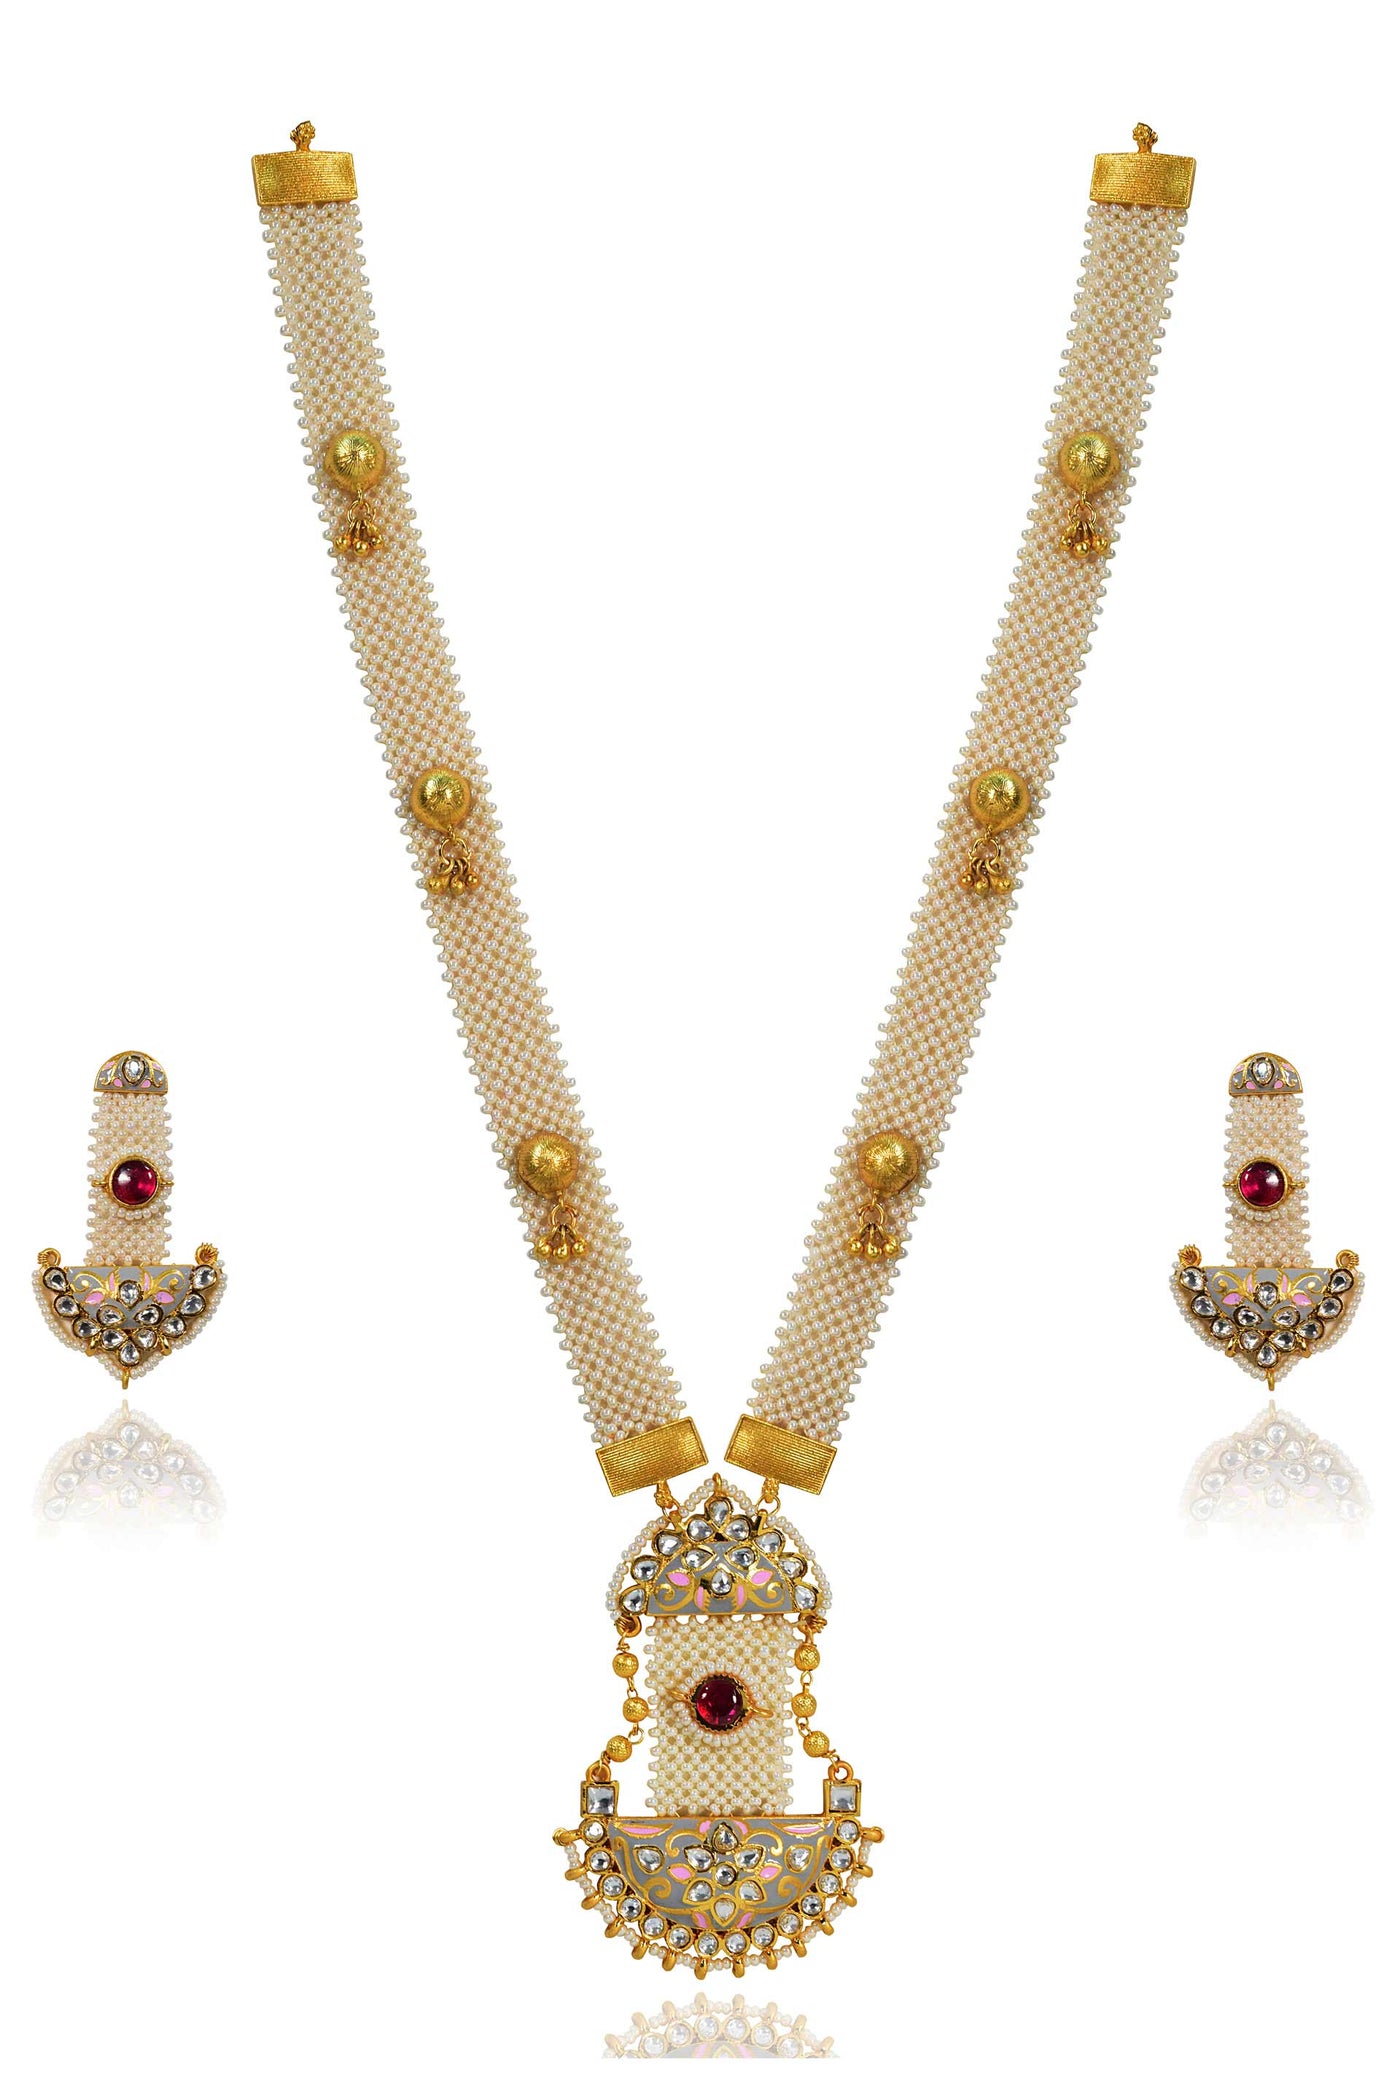 Tizora elegant ethnic pearl necklace set gold white red fashion imitation jewellery indian designer wear online shopping melange singapore